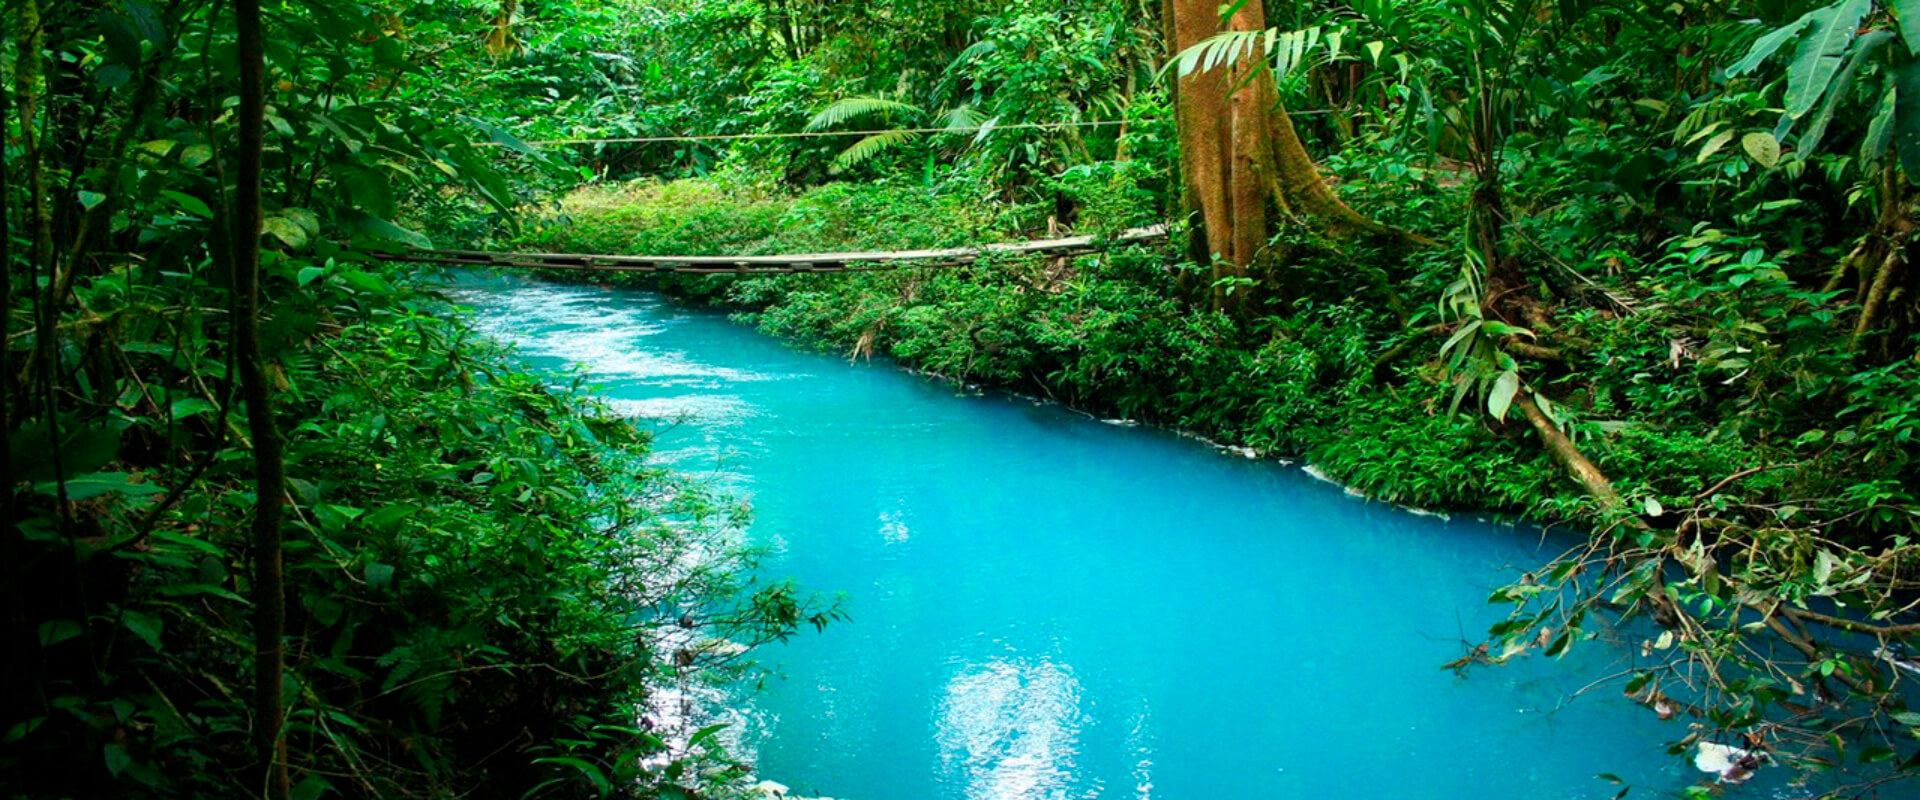 Rio Celeste National Park Guided Hike | Costa Rica Jade Tours